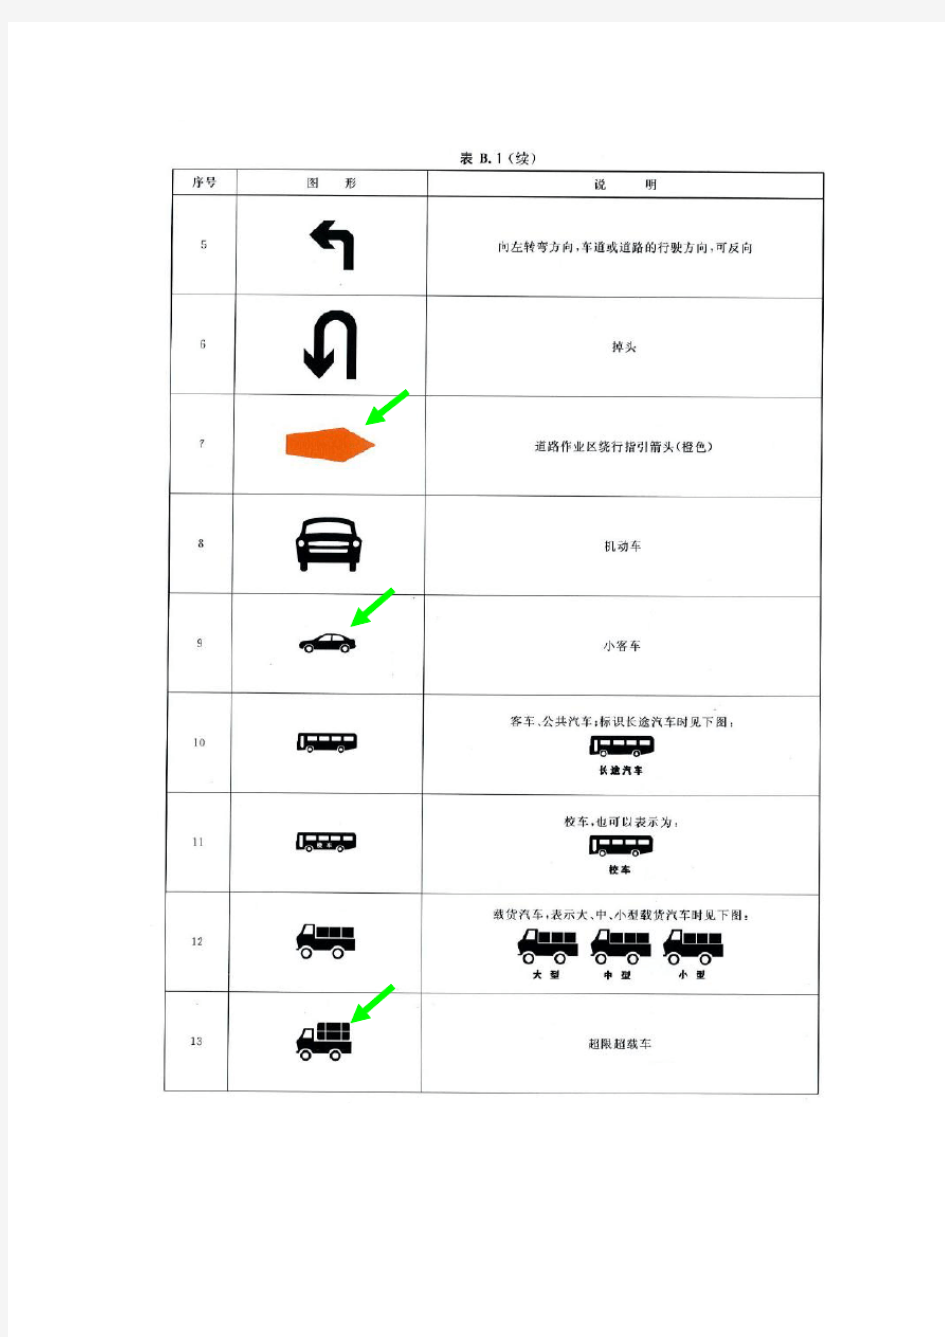 道路交通标志和标线基本图形有绿色箭头是新增的图